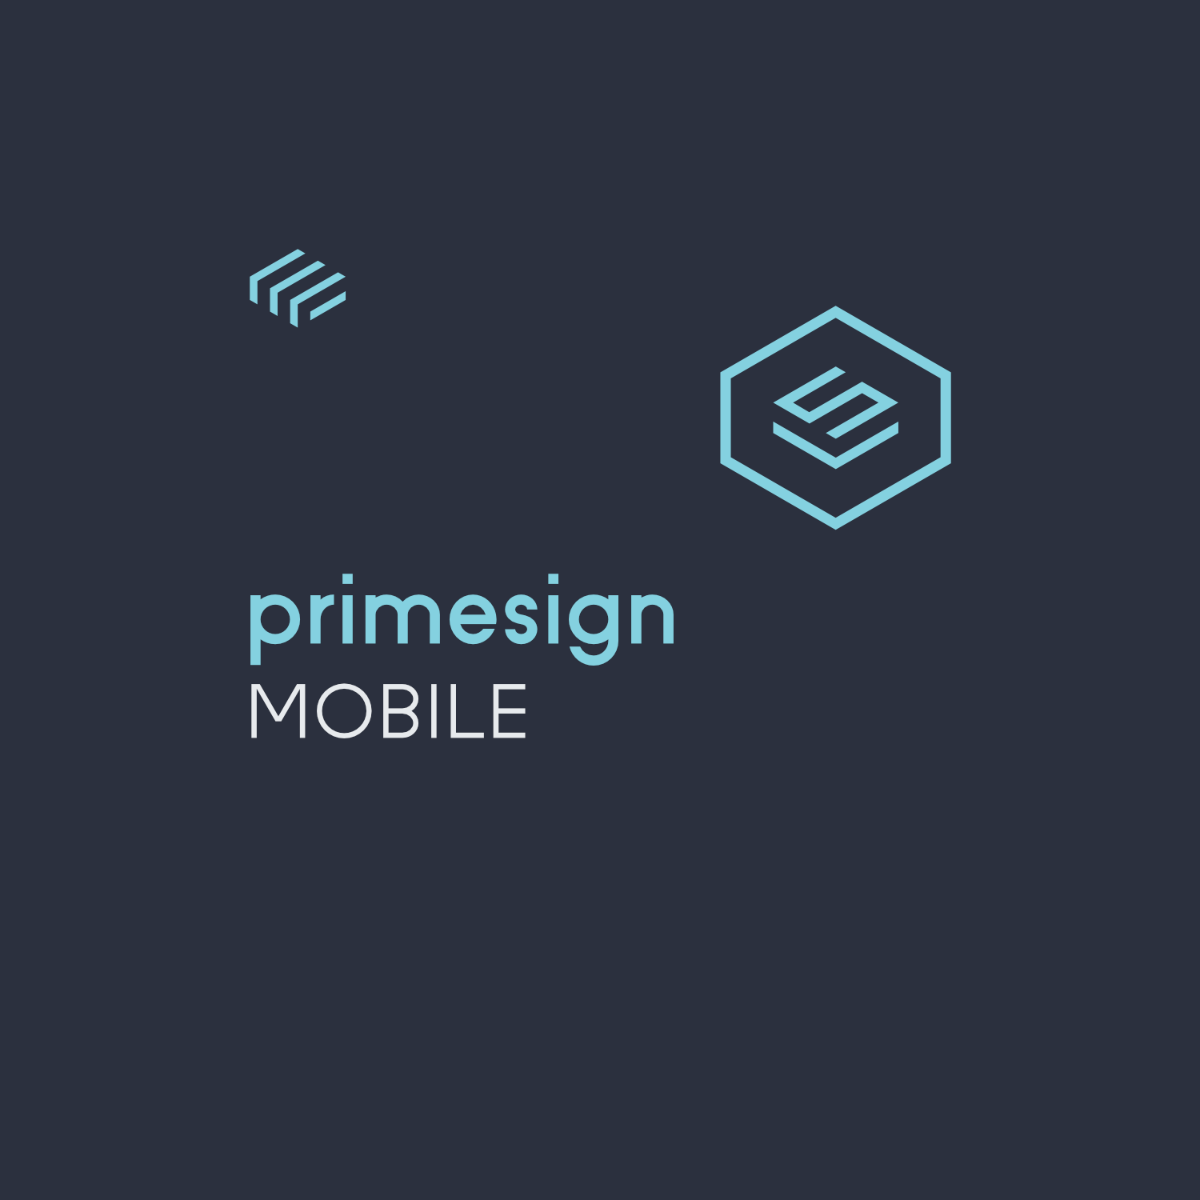 primesign mobile